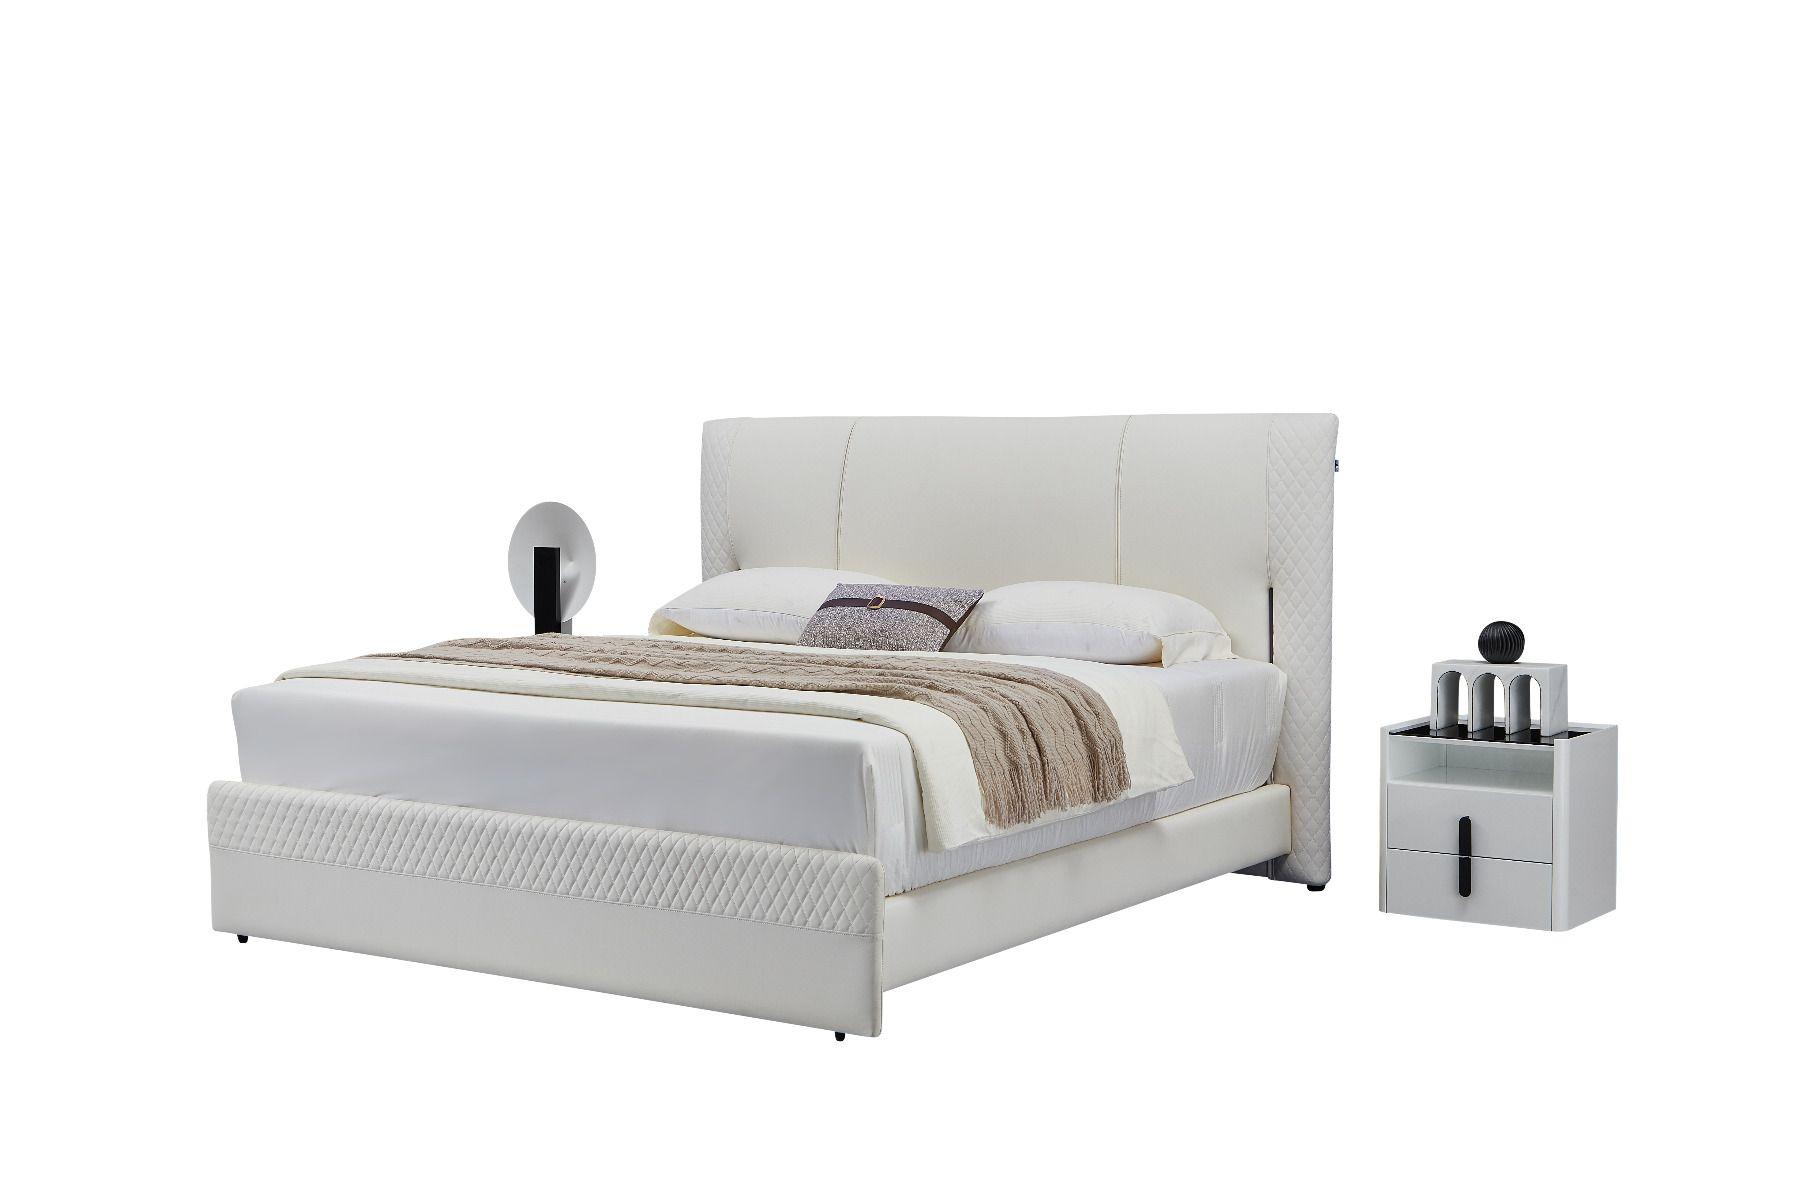 Contemporary, Modern Platform Bedroom Set B-Y2003-EK / NS-Y2001 B-Y2003-EK-3PC in Gray Genuine Leather